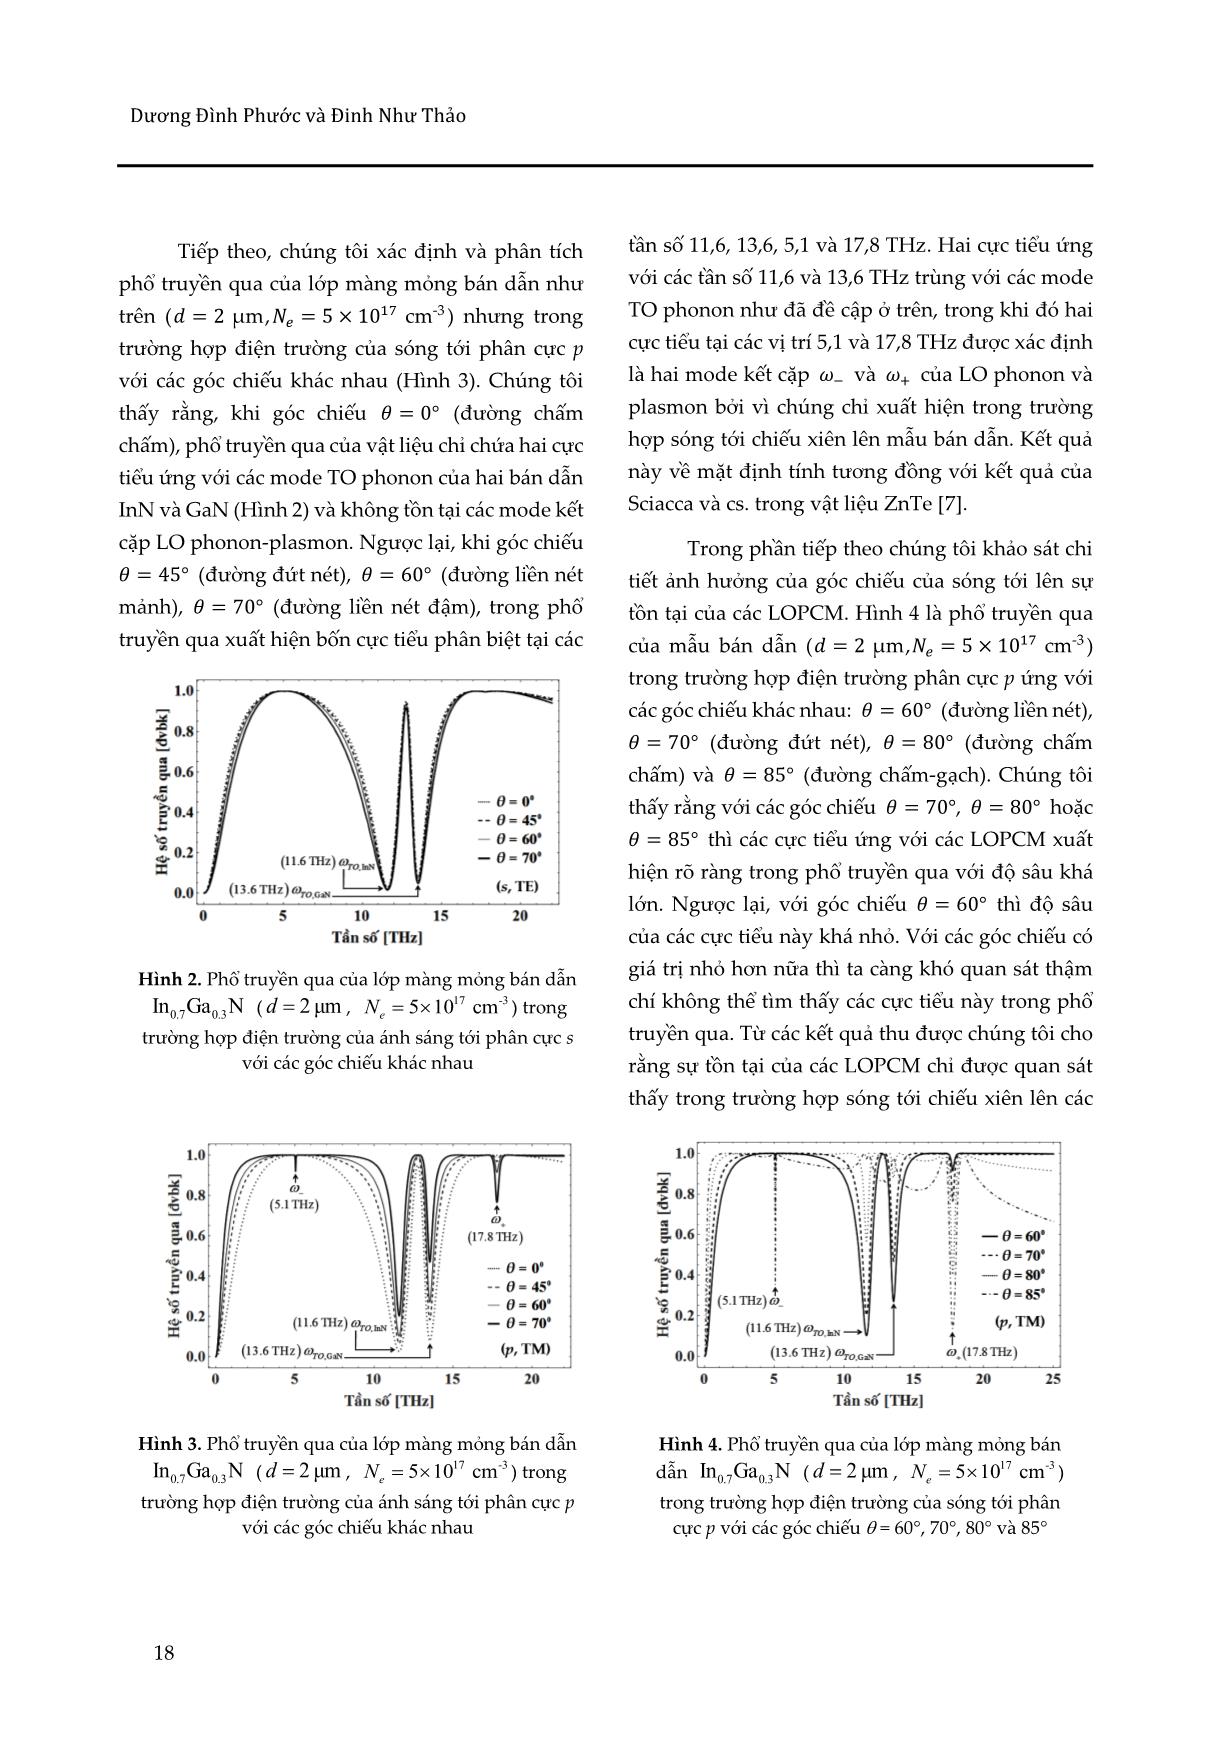 Sự kết cặp của phonon quang dọc - plasmon trong các lớp bán dẫn InGaN trang 6